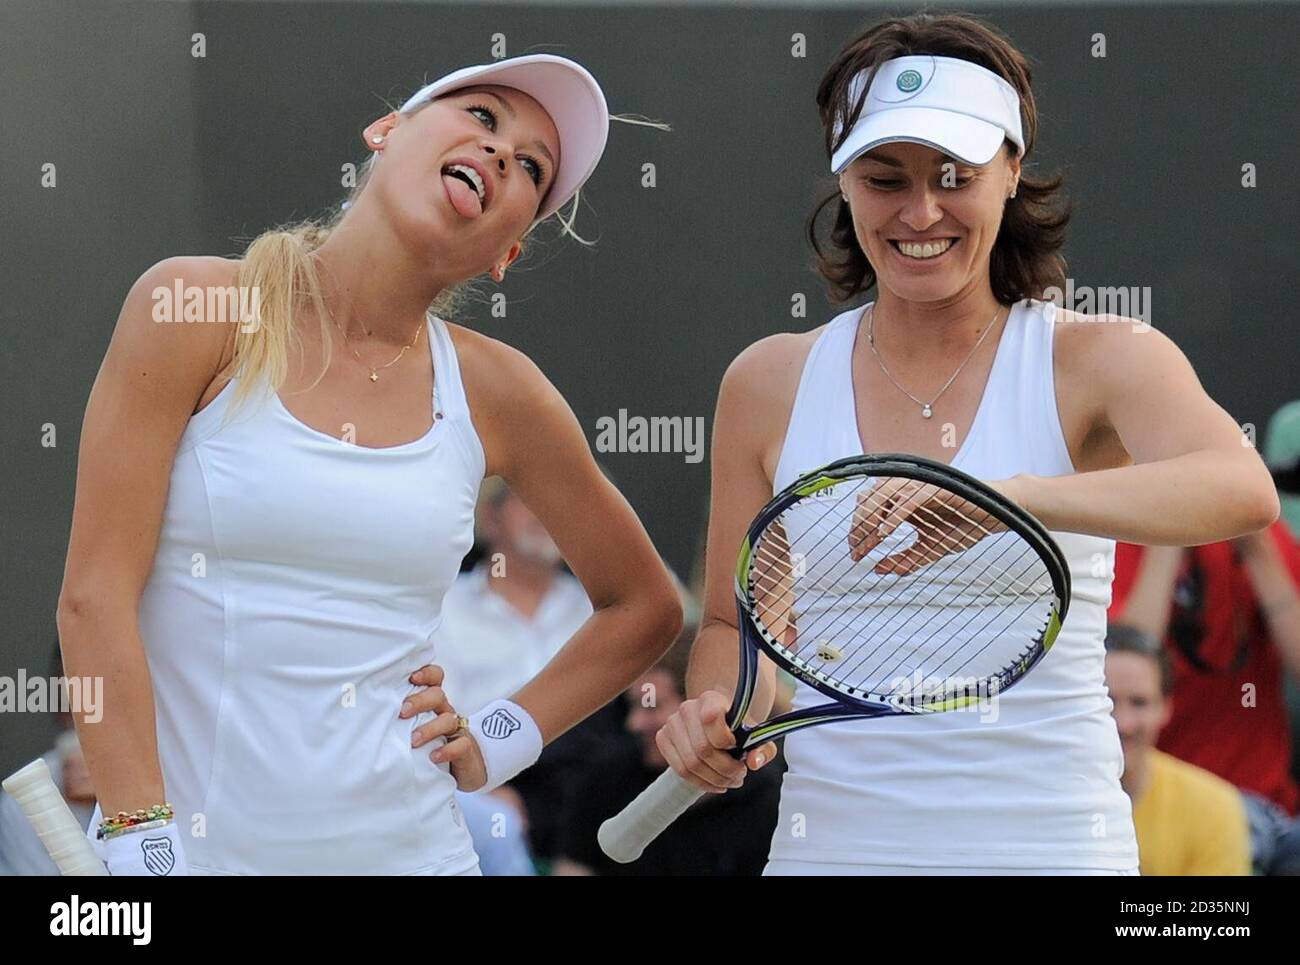 Anna Kournikova dans son invitation de dames double match avec Martina Hingis (à droite) pendant le huitième jour des Championnats de Wimbledon 2010 au All England Lawn tennis Club, Wimbledon. Banque D'Images